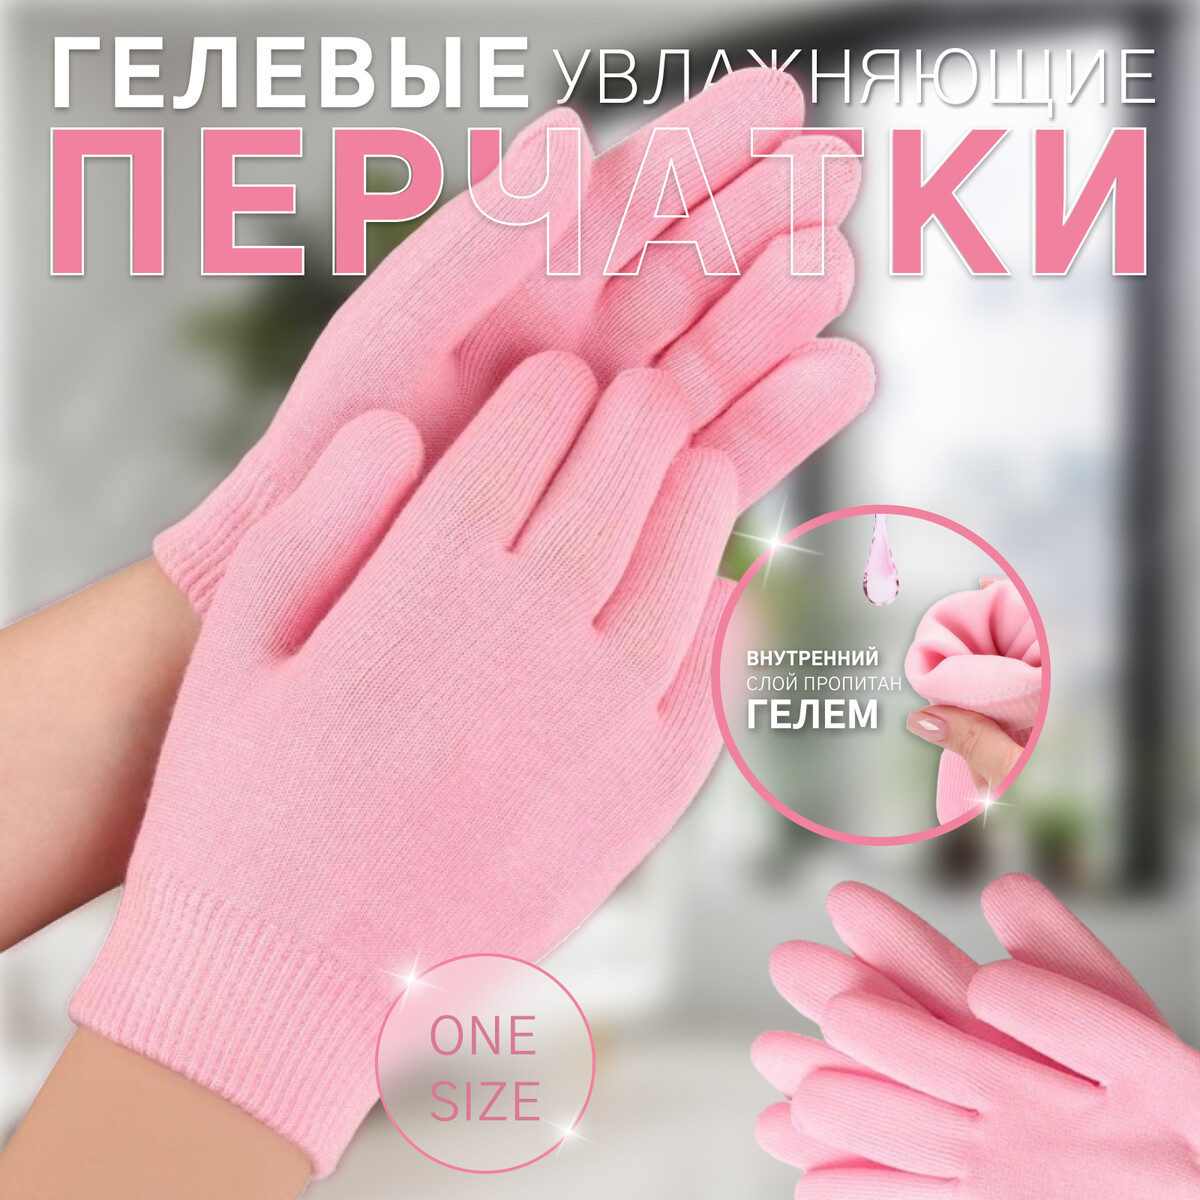 Гелевые перчатки увлажняющие one size цвет роз пакет Queen fair